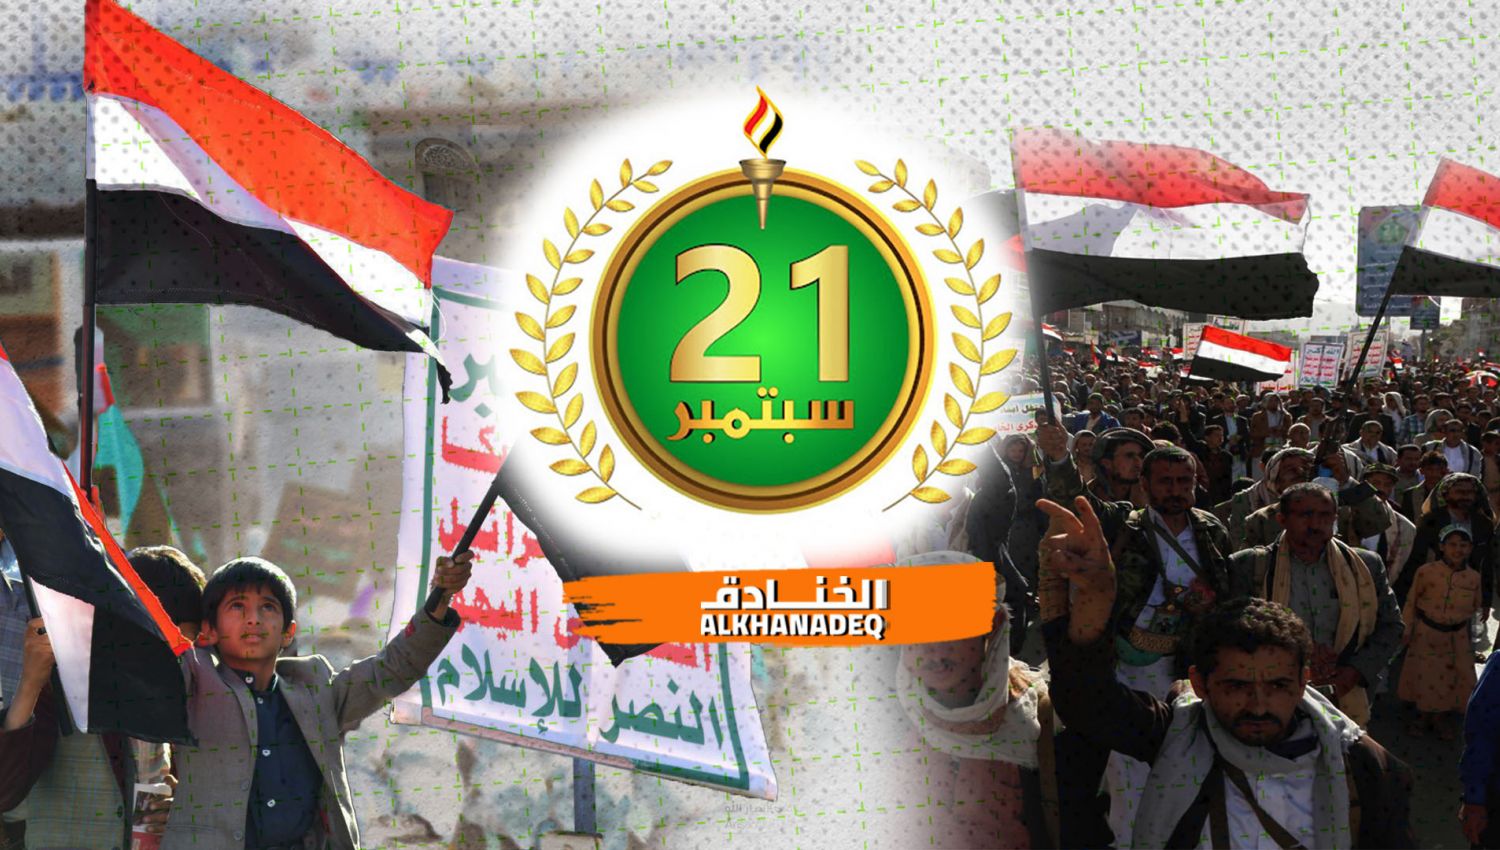 21 سبتمبر: يوم عبور الشعب اليمني إلى الدولة